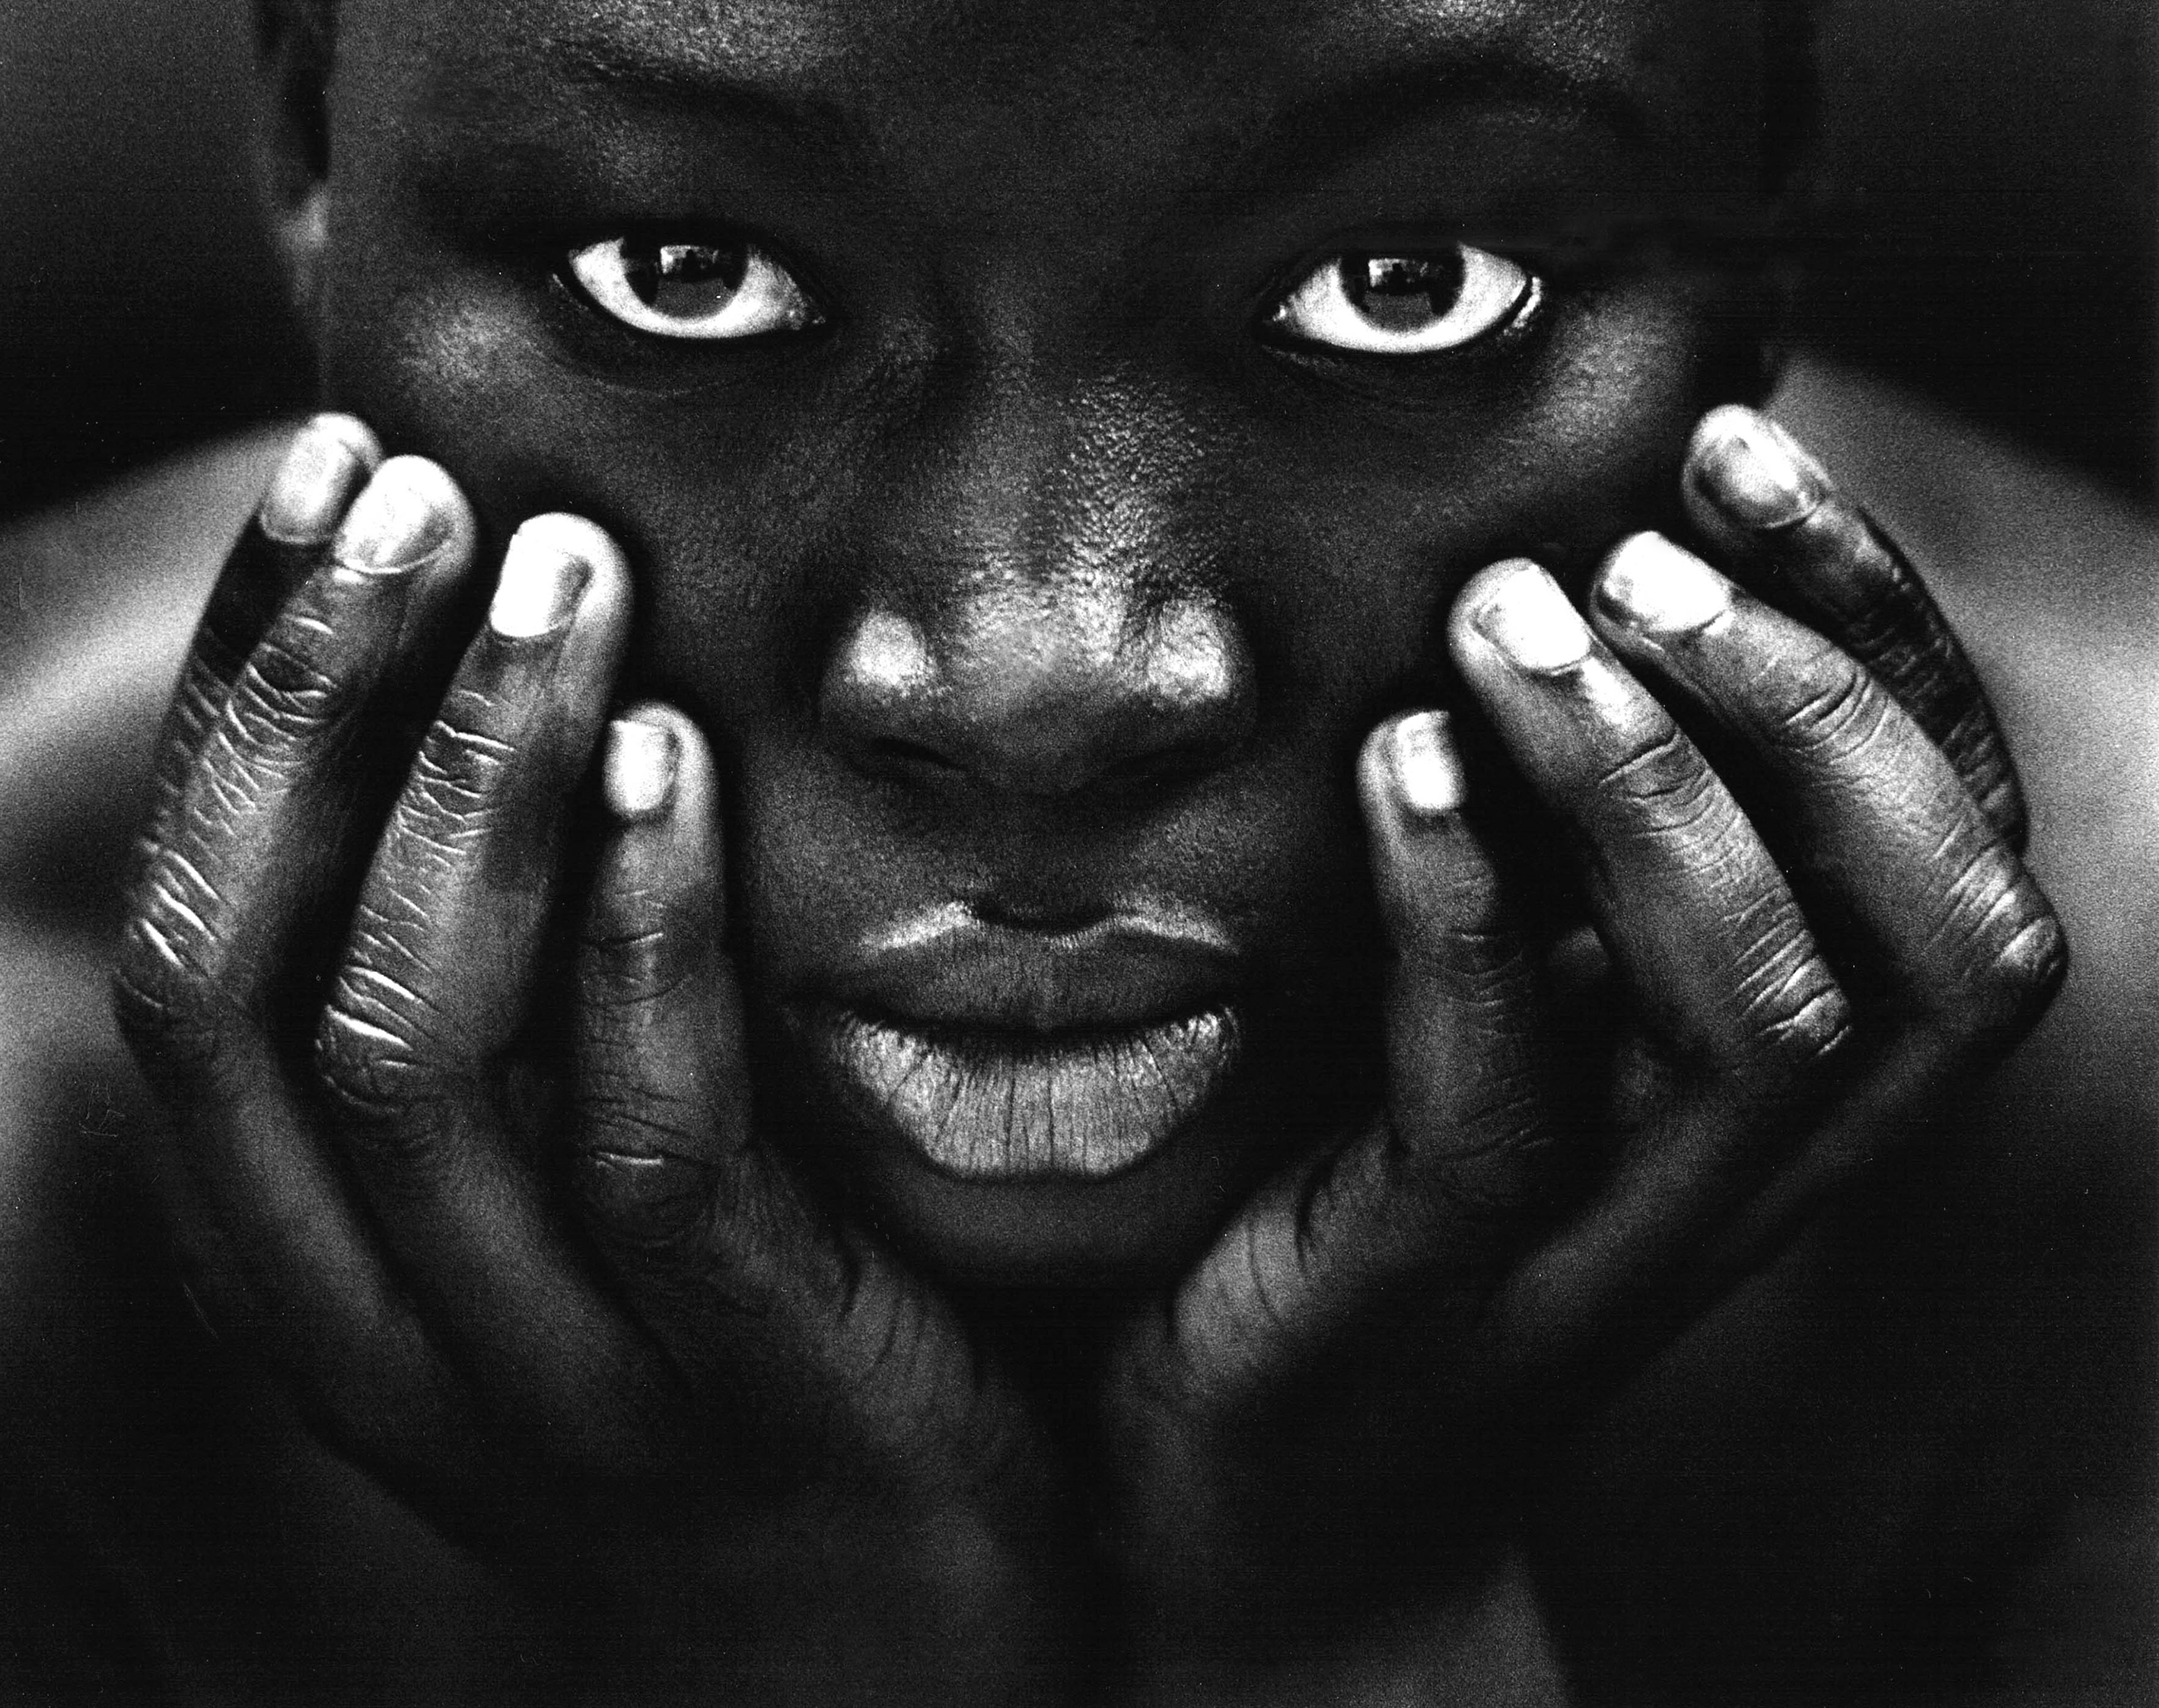 Barat negro. Африканка картина. Лукавый взгляд негра. Мастера чёрно-белого фотопортрета Африка.